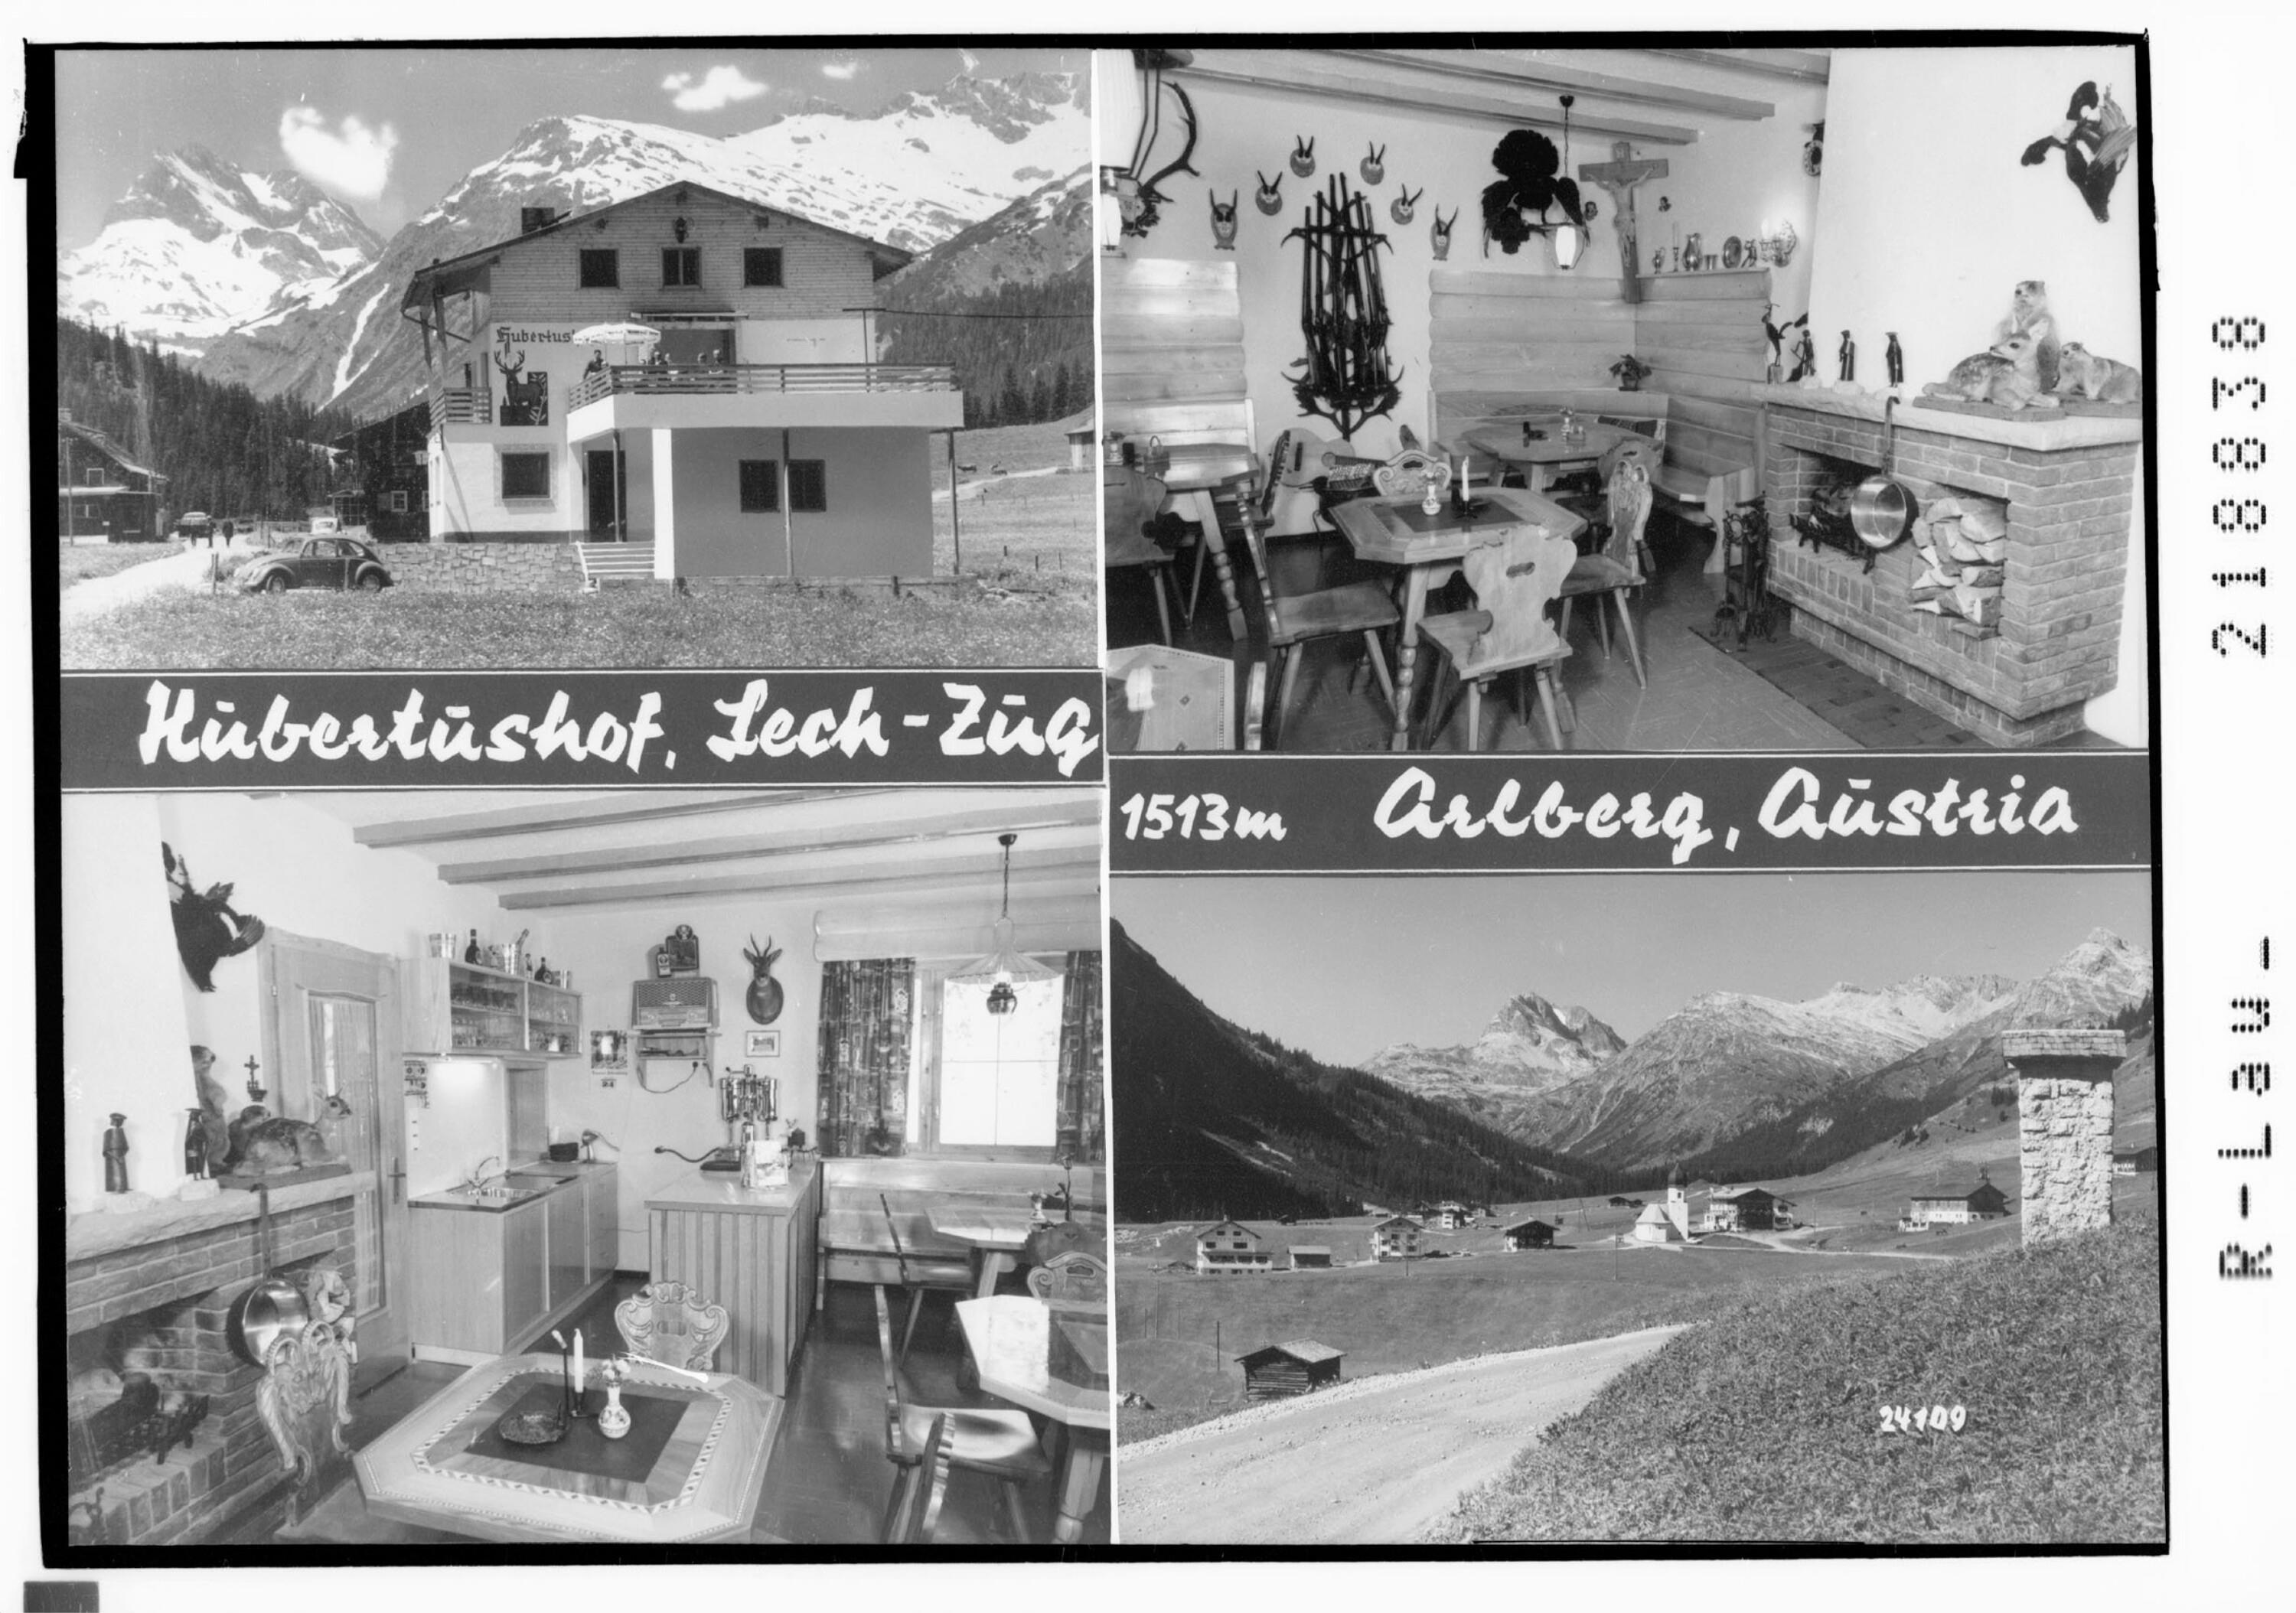 Hubertushof Lech - Zug 1513 m, Arlberg Austria></div>


    <hr>
    <div class=